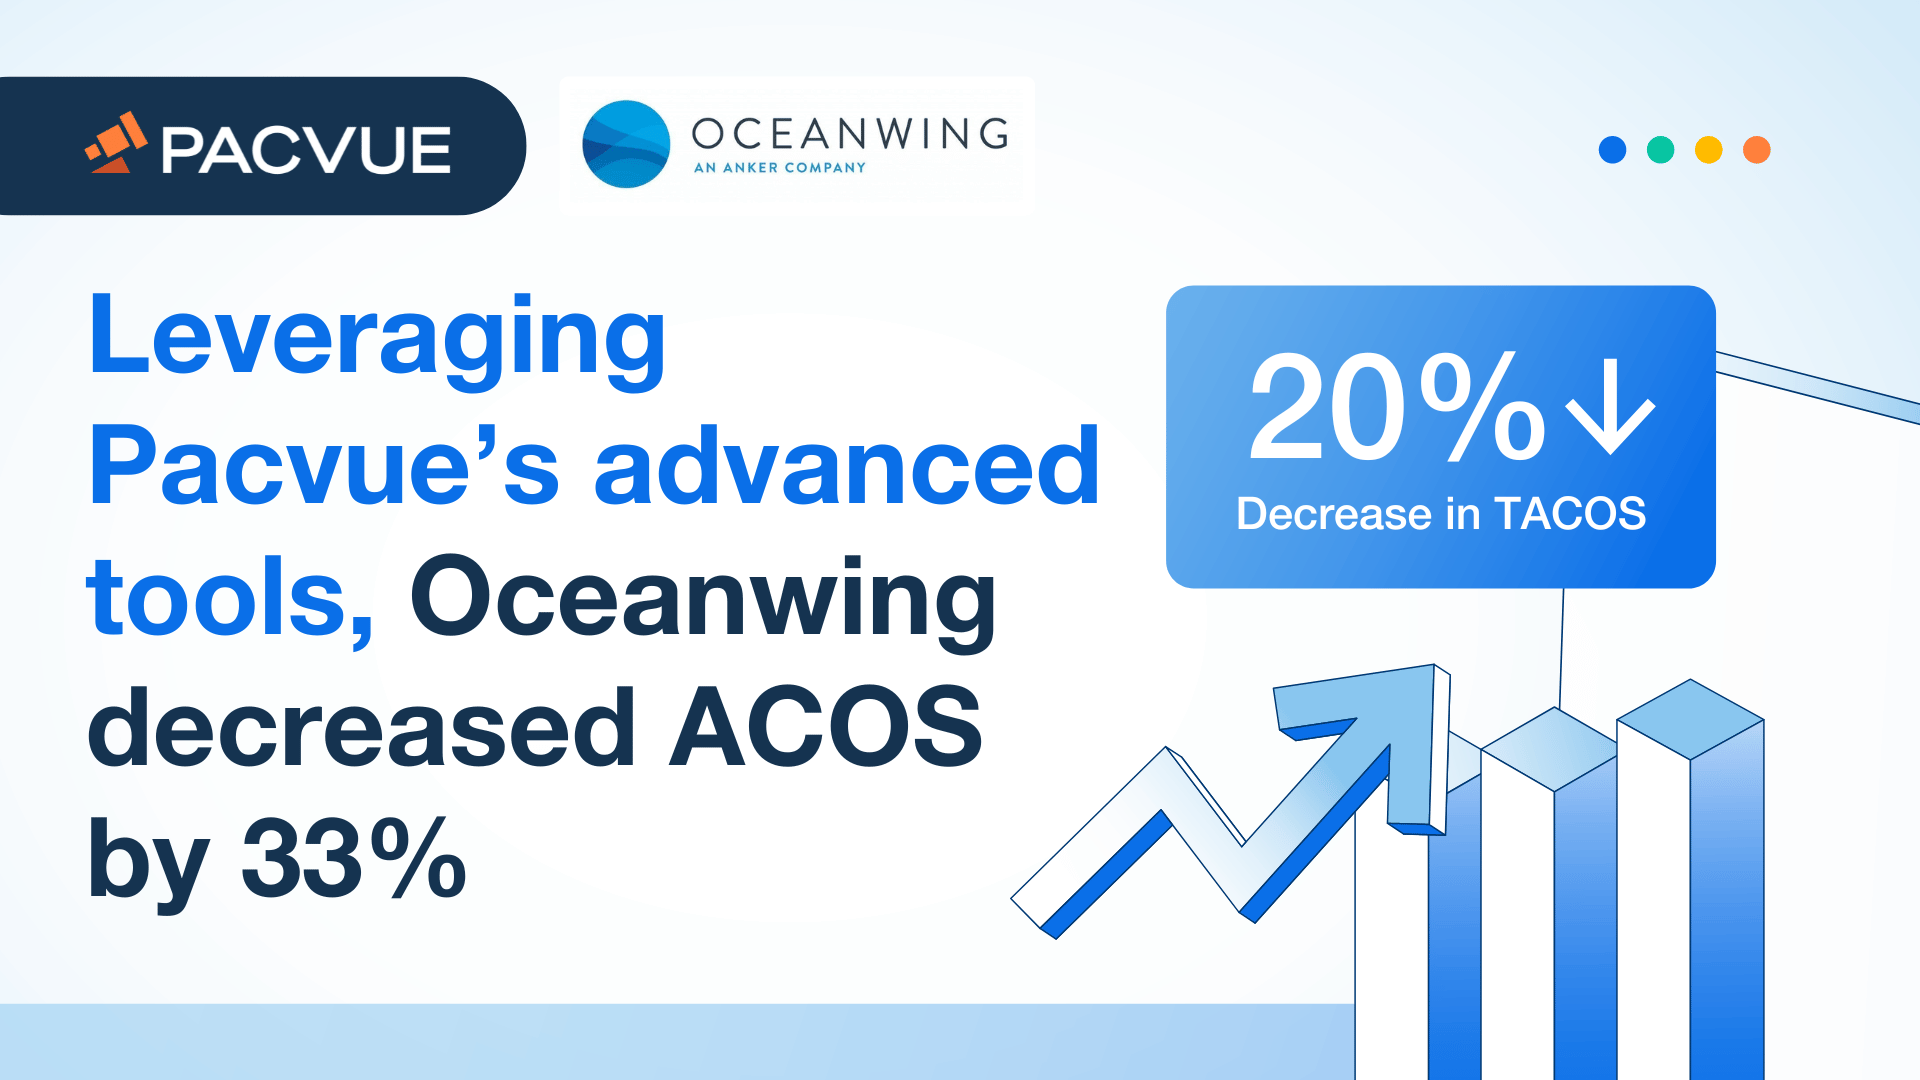 Durch den Einsatz der fortschrittlichen Tools von Pacvue konnte Oceanwing die ACOS um 33 % senken.